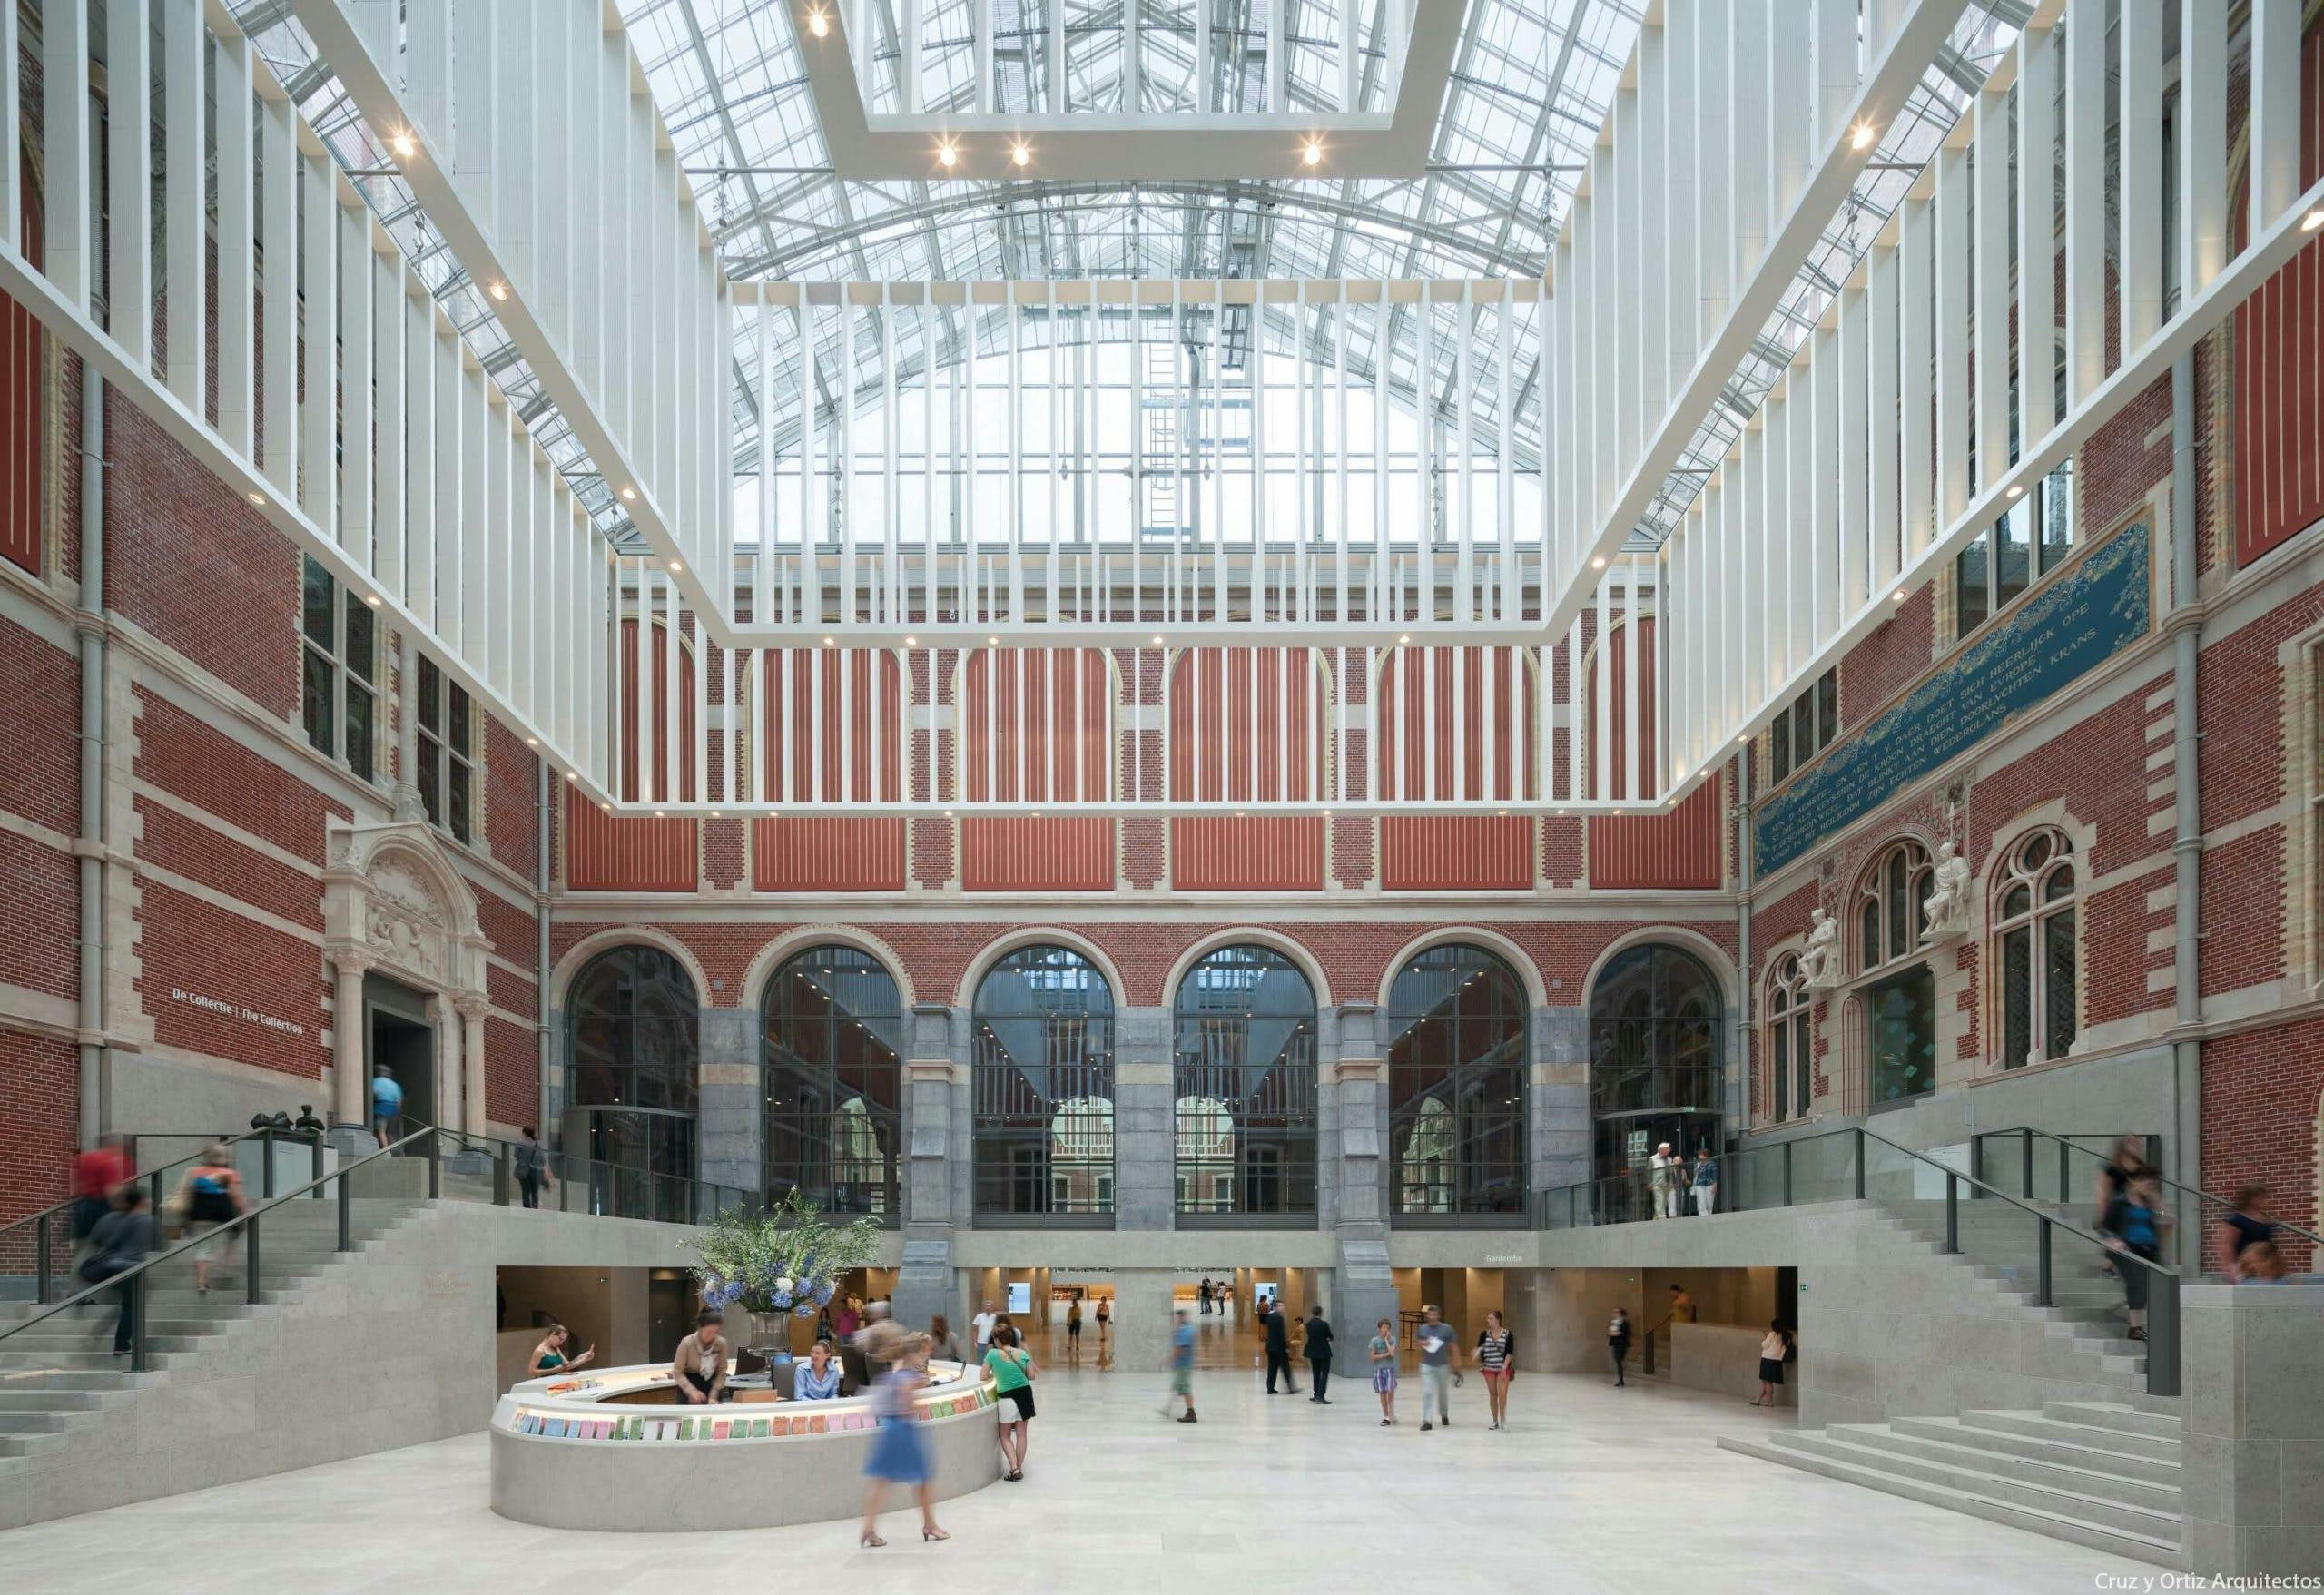 Numéro d'image 32 de la section actuelle de Les plus belles œuvres d’architecture contemporaine d'Amsterdam, maintenant disponible sur le C-guide de Cosentino France